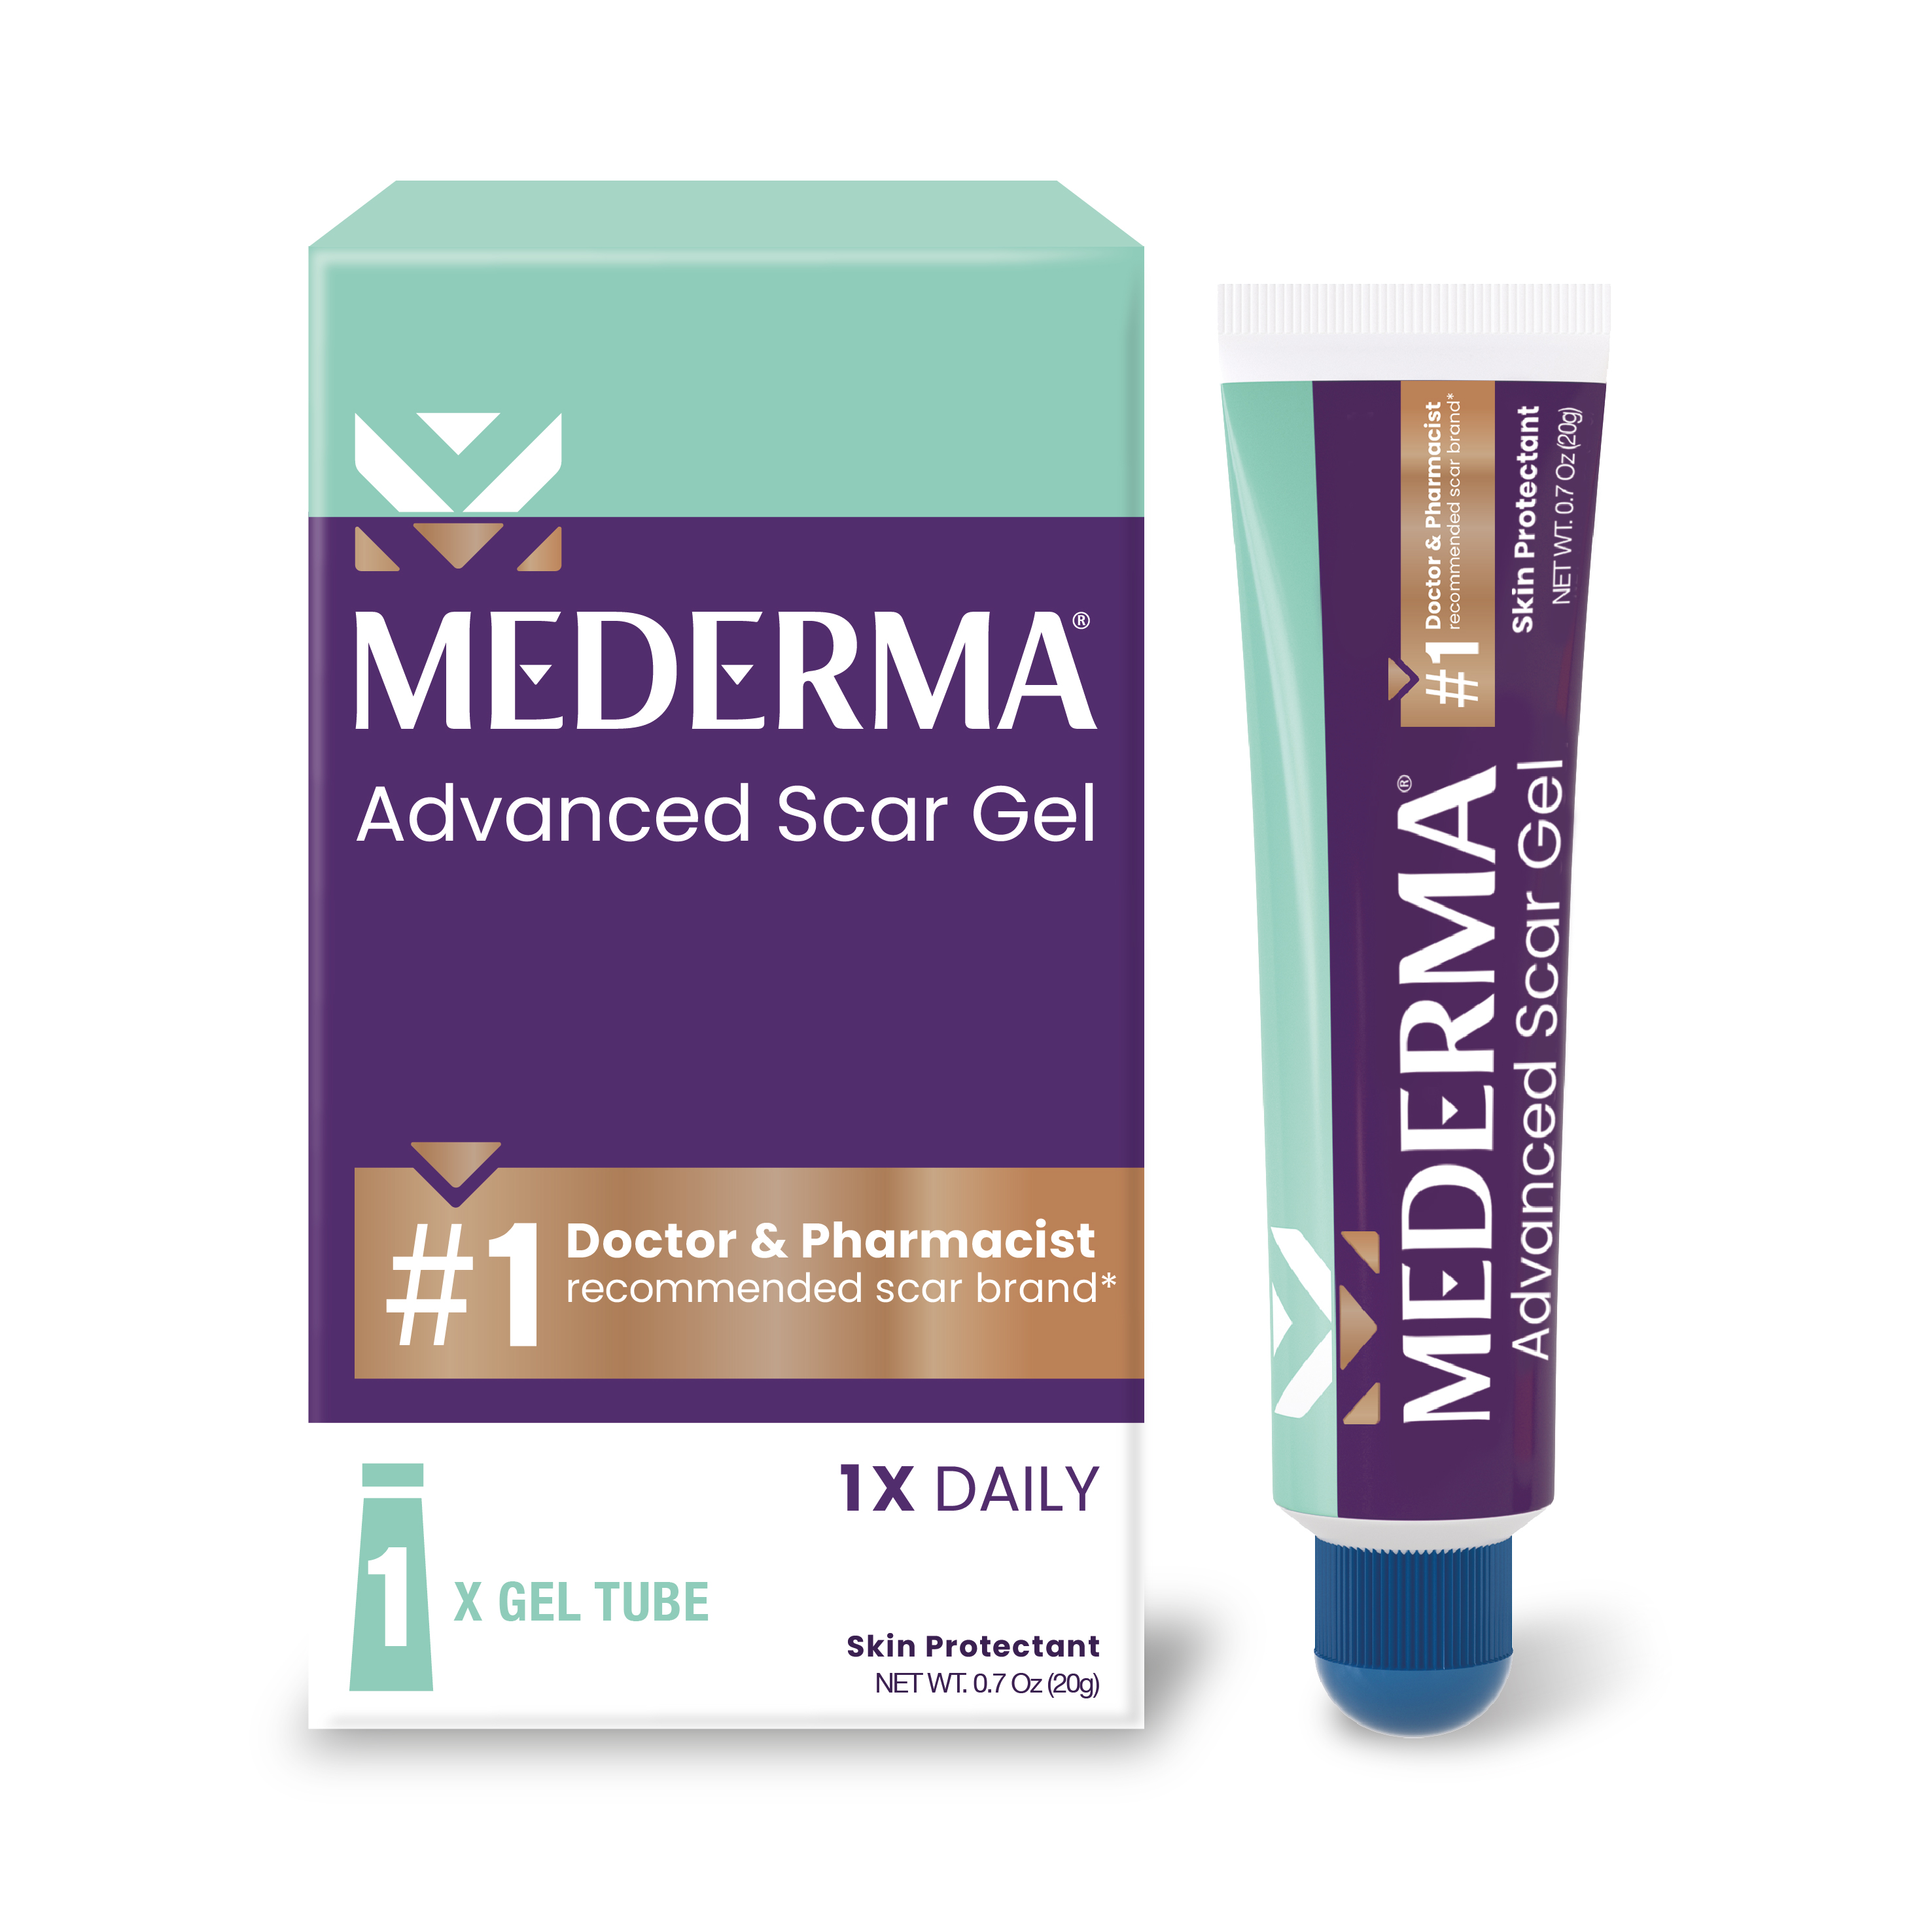 Mederma Advanced Scar Gel Scar Treatment, 0.70 oz (20g) - image 1 of 12